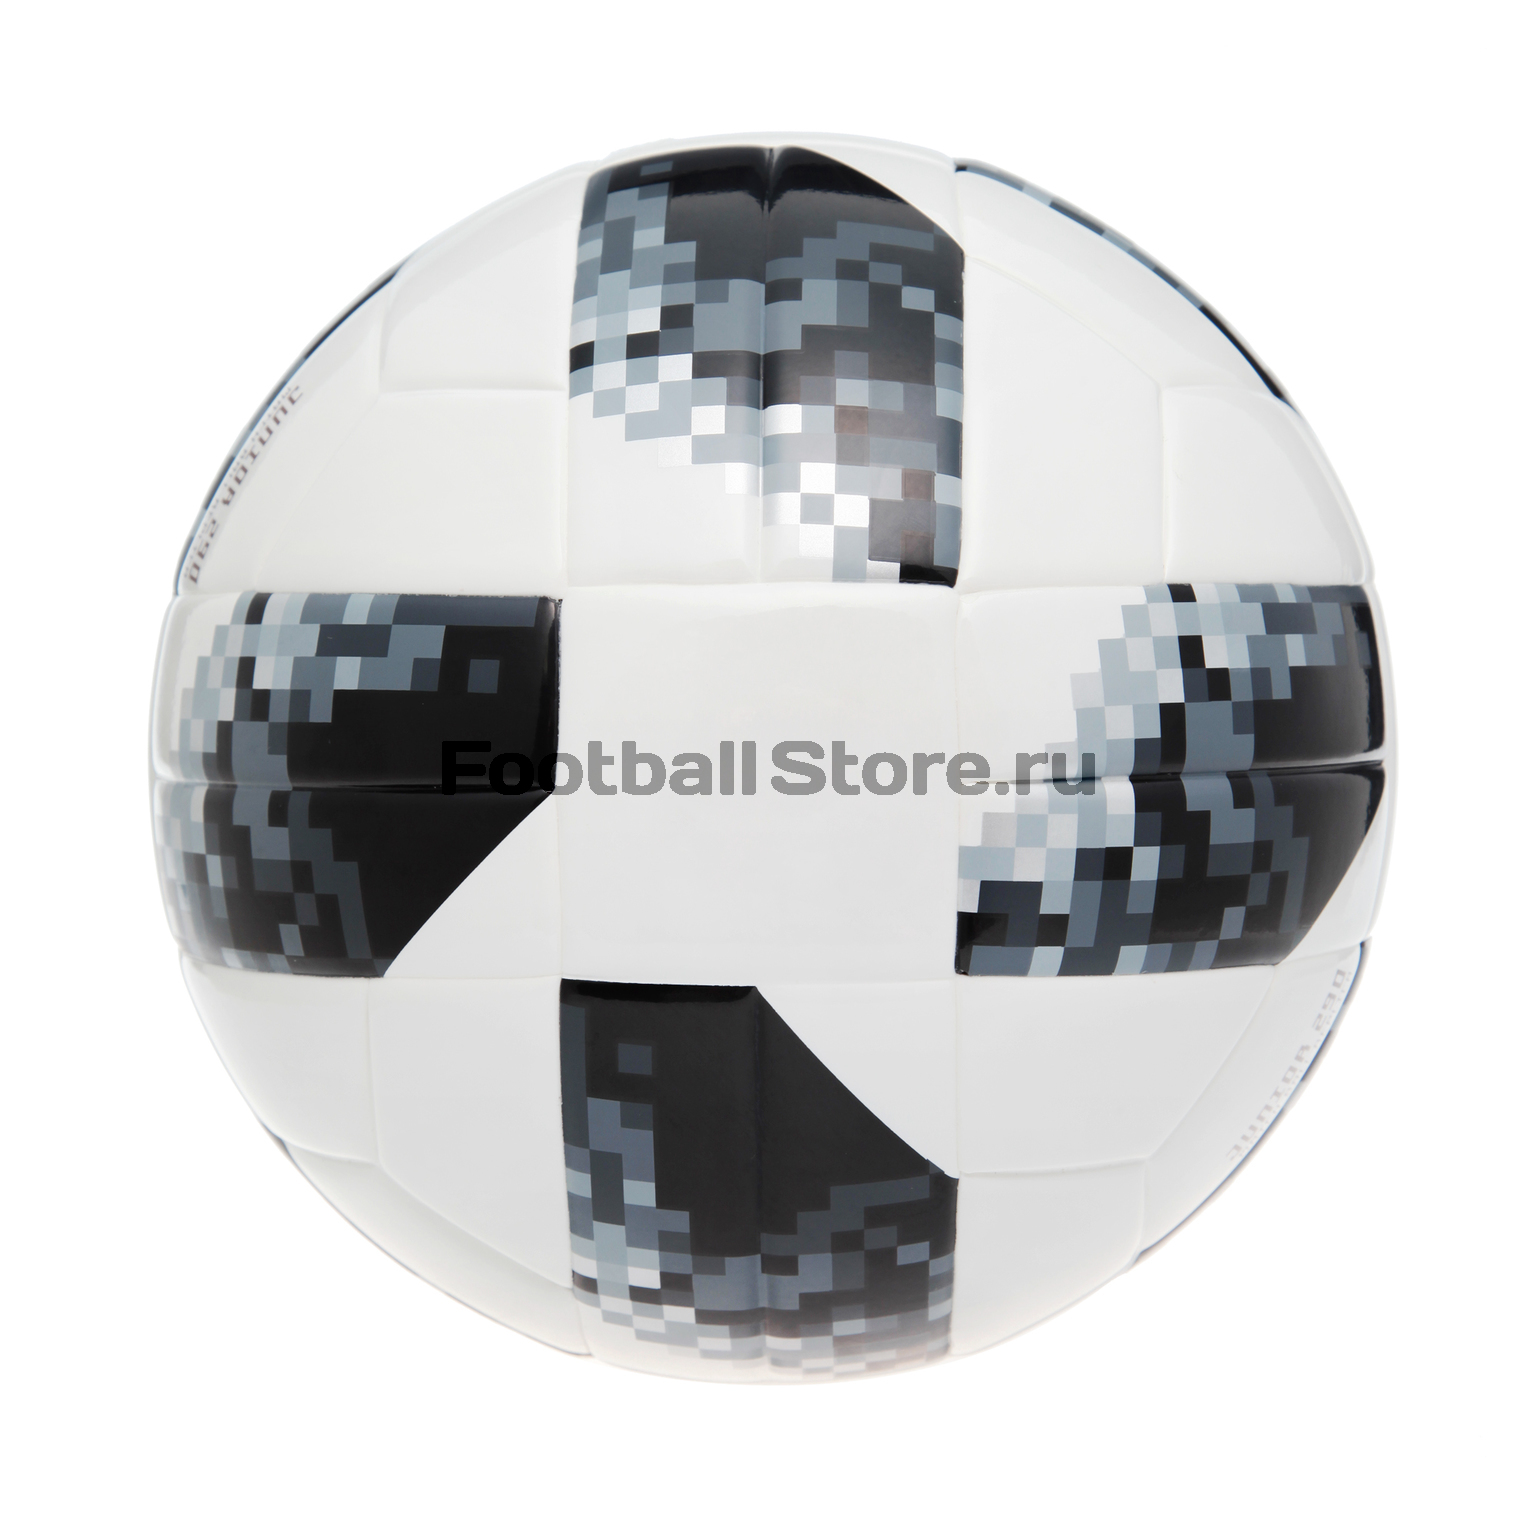 Облегченный мяч Adidas Telstar World Cup 290g CE8147